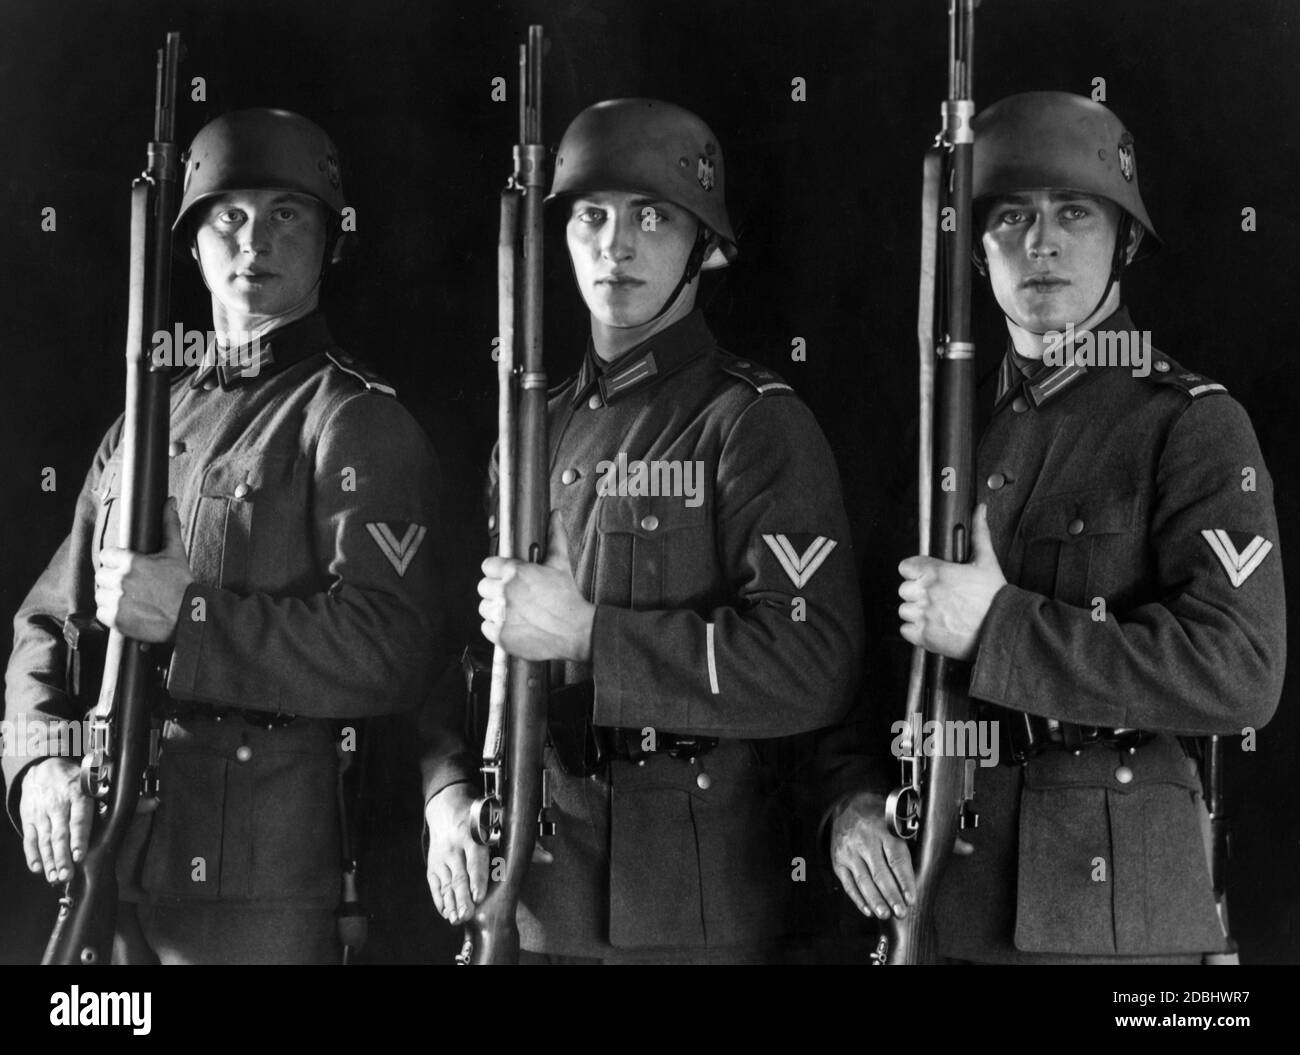 Foto de estudio de los soldados del Batallón de la Guardia de Berlín en  Praesentiergriff. Llevan los nuevos uniformes, Feldbluse 36, pero todavía  los cascos Stahlhelm 18, ya provistos con la nueva